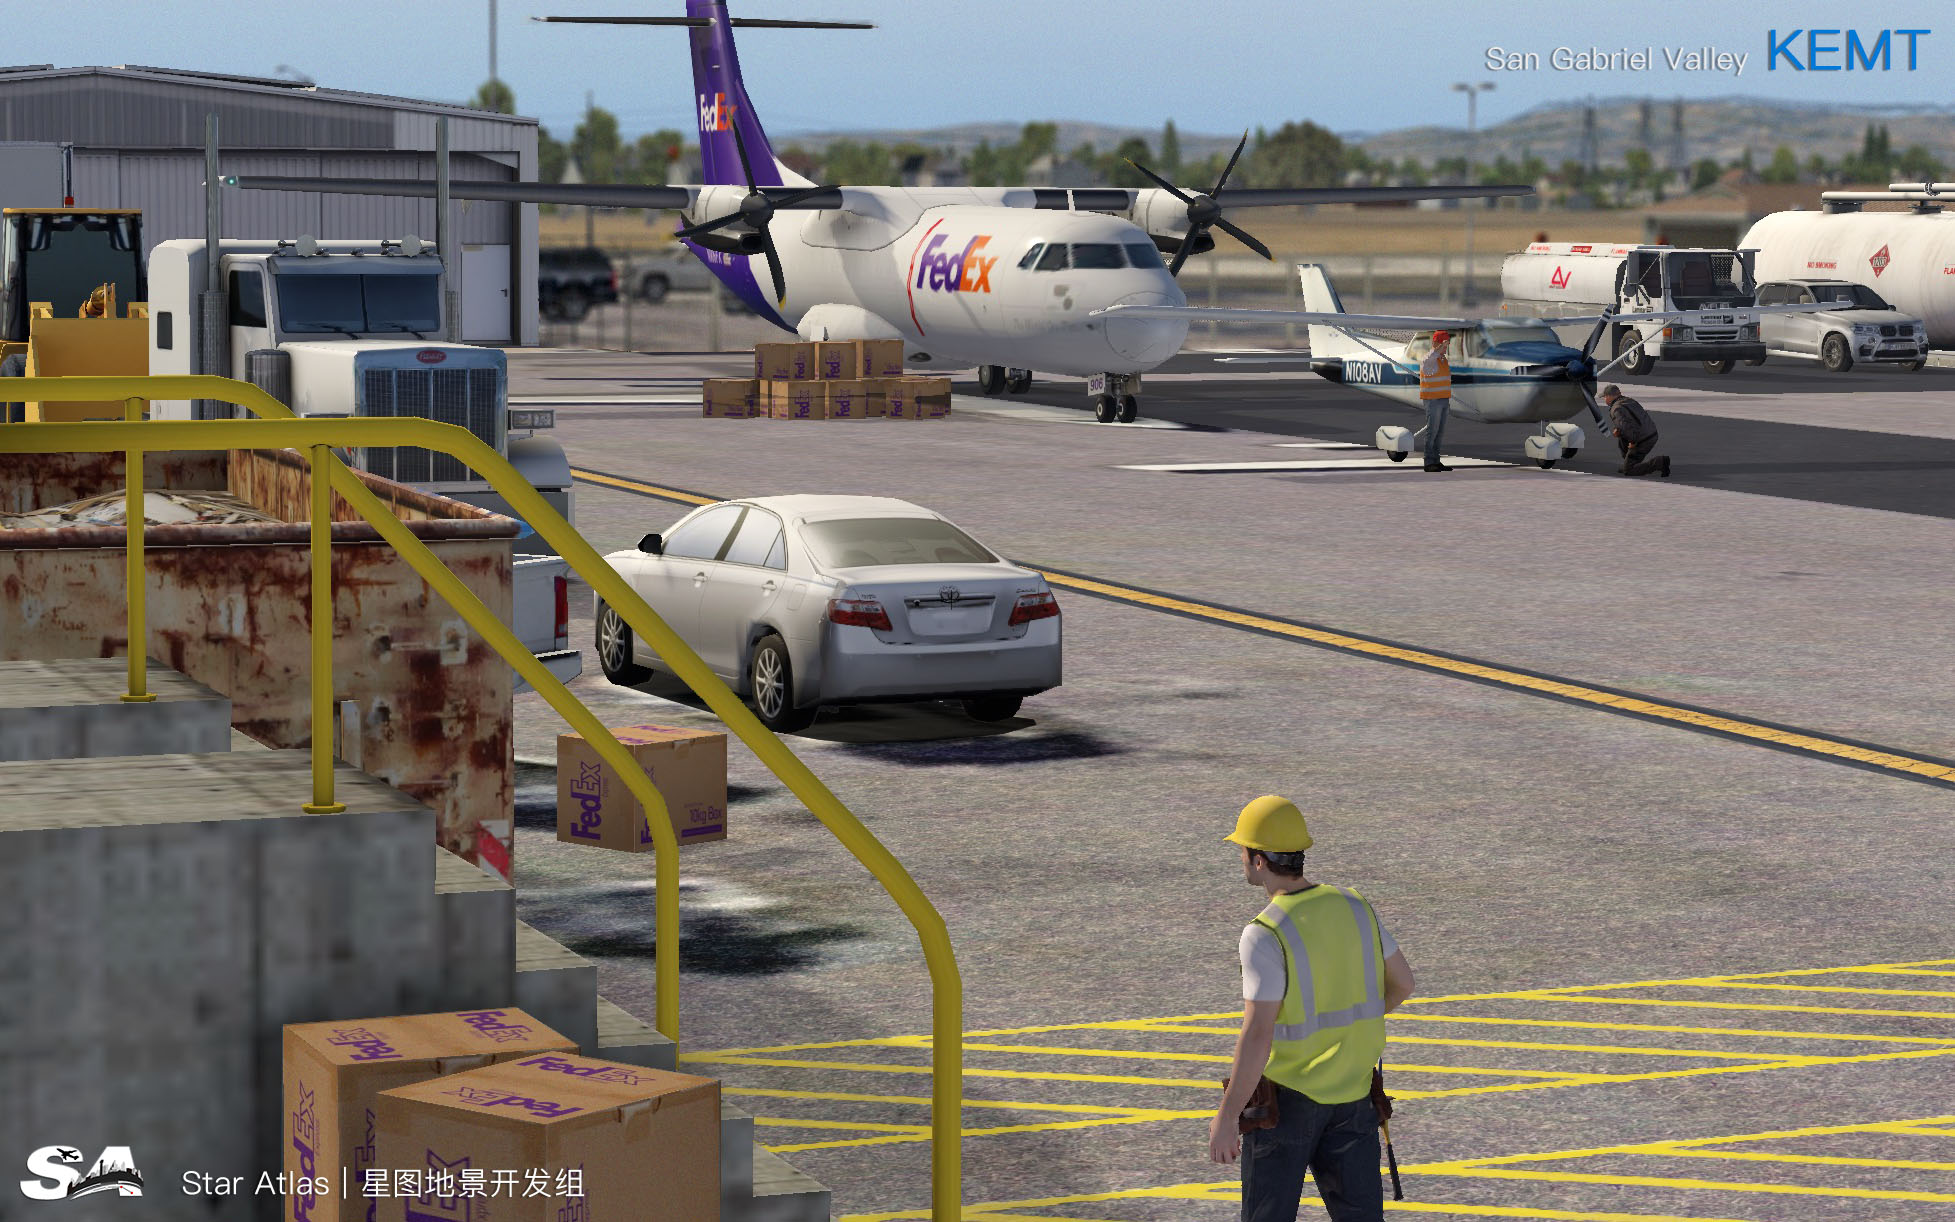 【X-Plane】KEMT-圣盖博谷机场 HD 1.0-8 